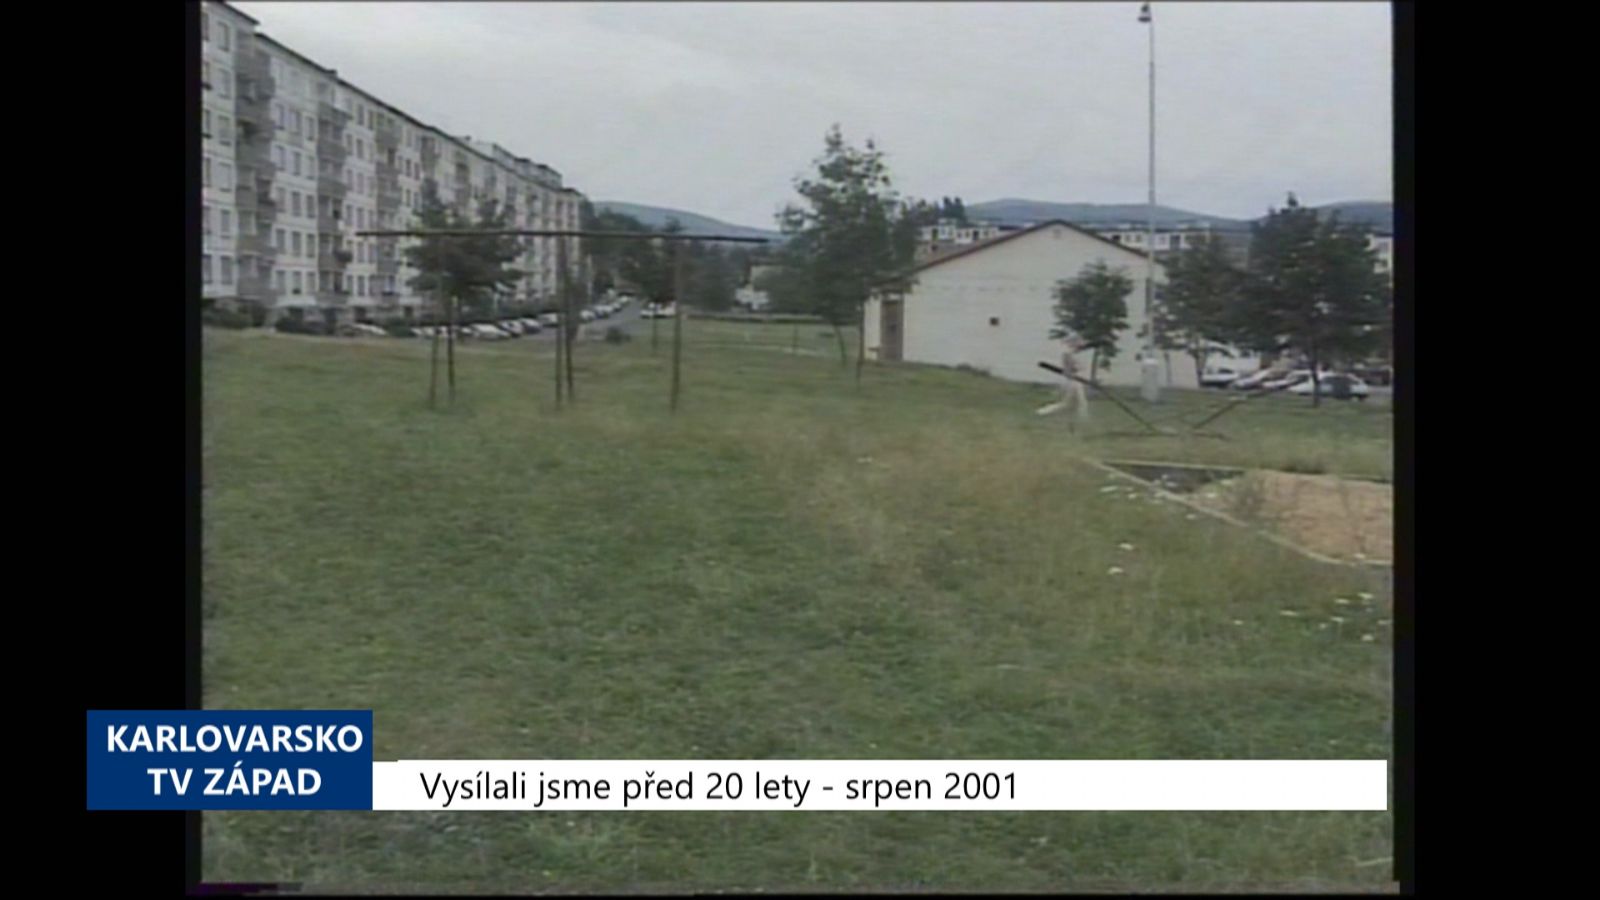 2001 – Sokolov: Děti budou mít nová moderní hřiště (TV Západ)